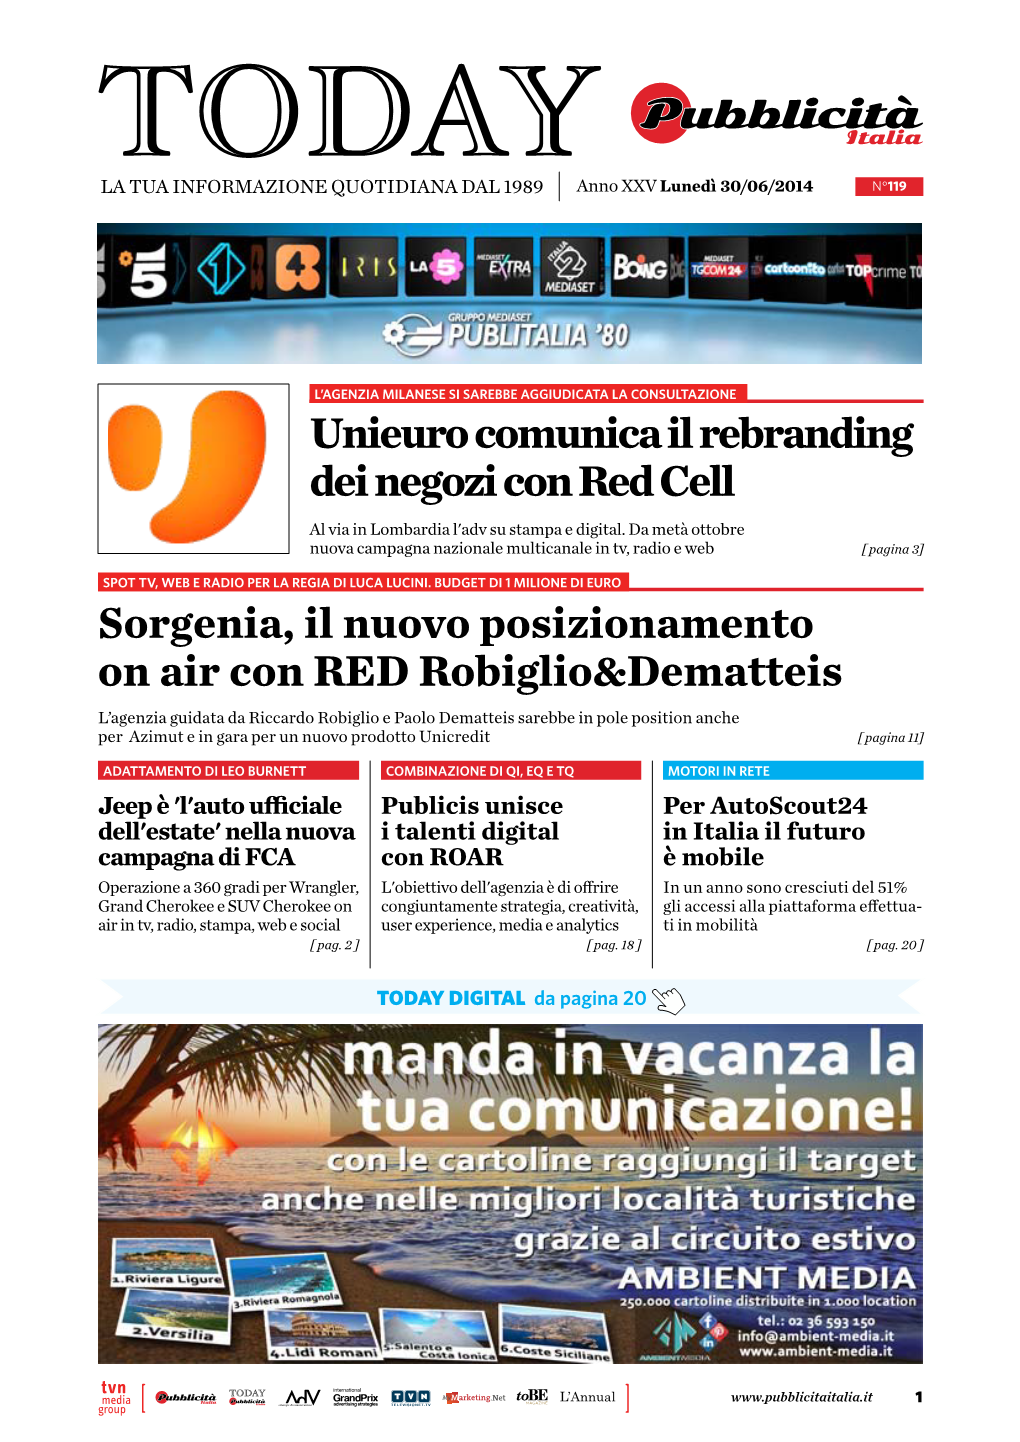 Unieuro Comunica Il Rebranding Dei Negozi Con Red Cell Sorgenia, Il